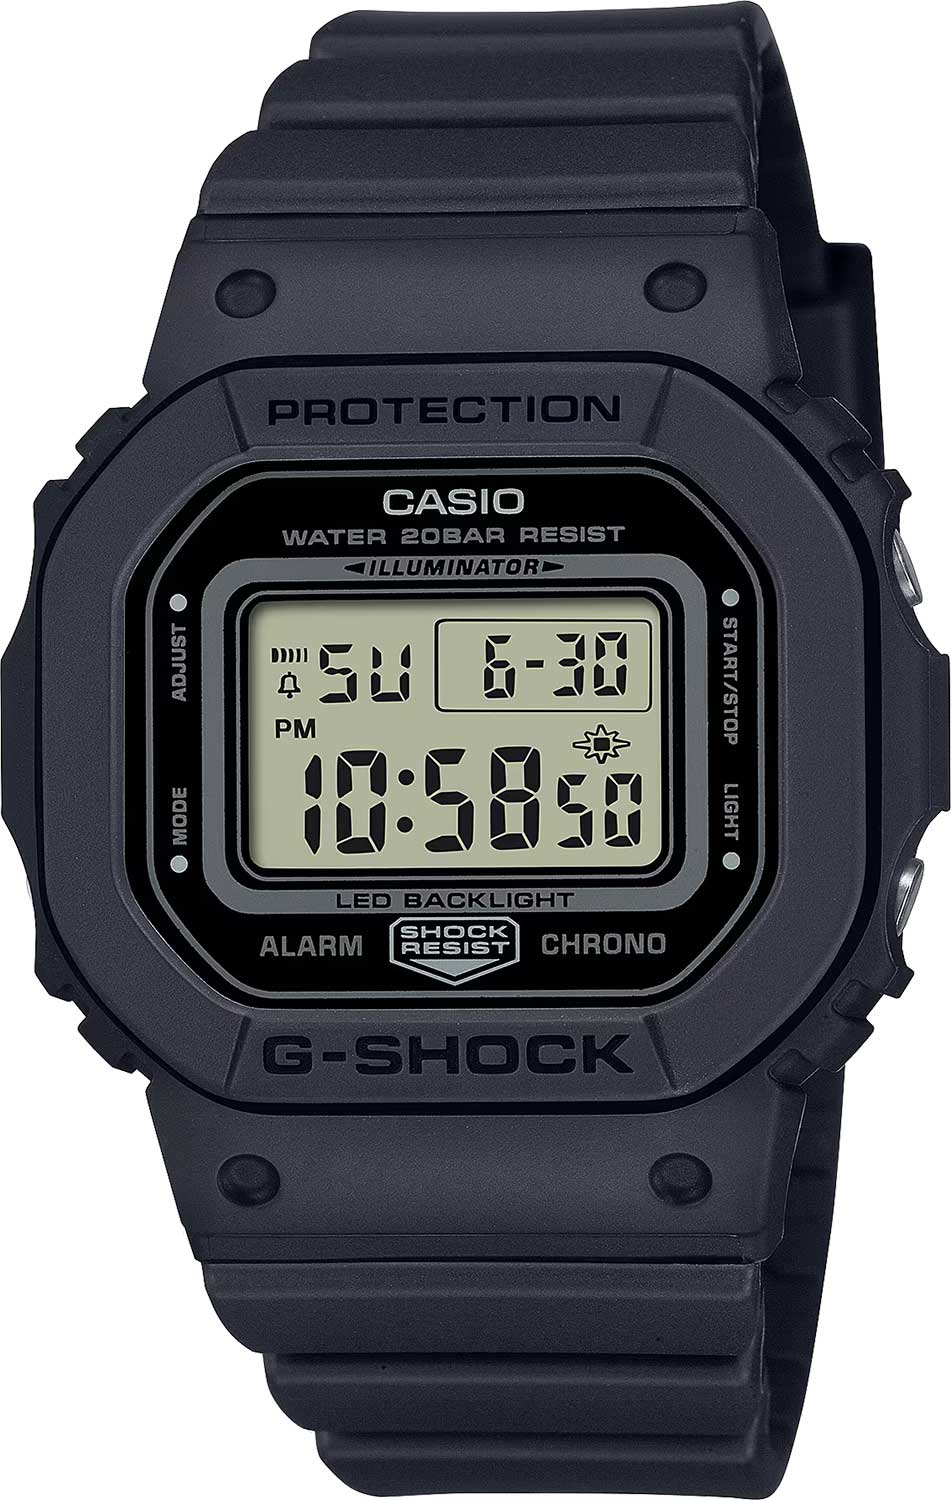    Casio G-SHOCK GMD-S5600BA-1  